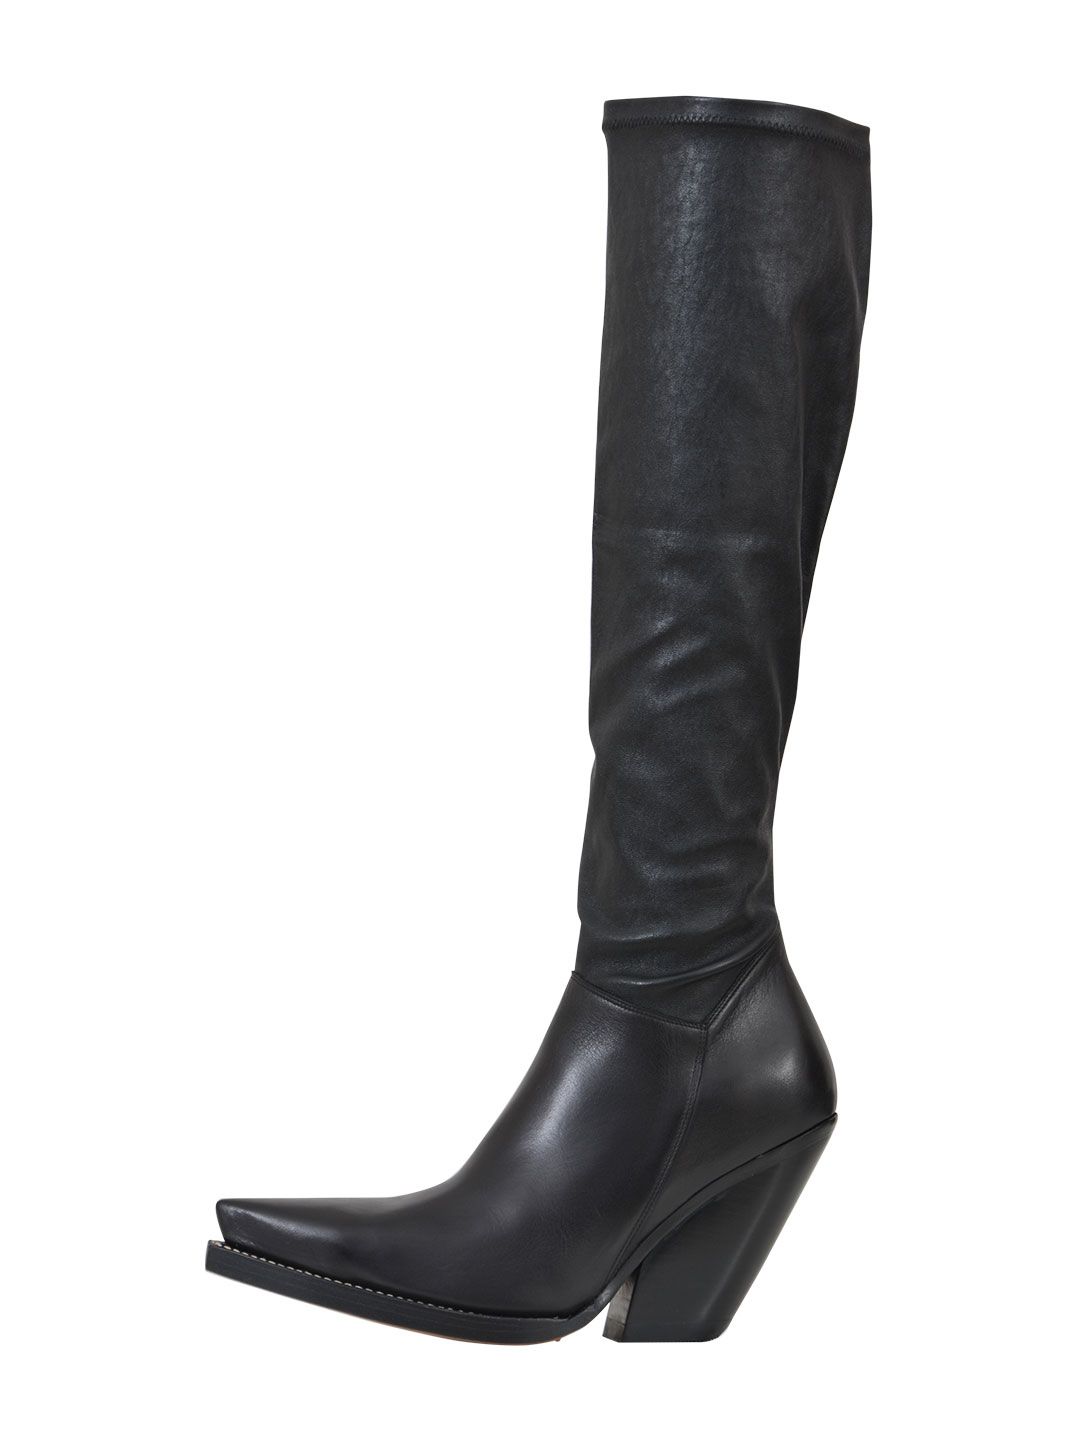 Celine - Celine 9,5cm Santiag Boots - Black, Women's Boots | Italist